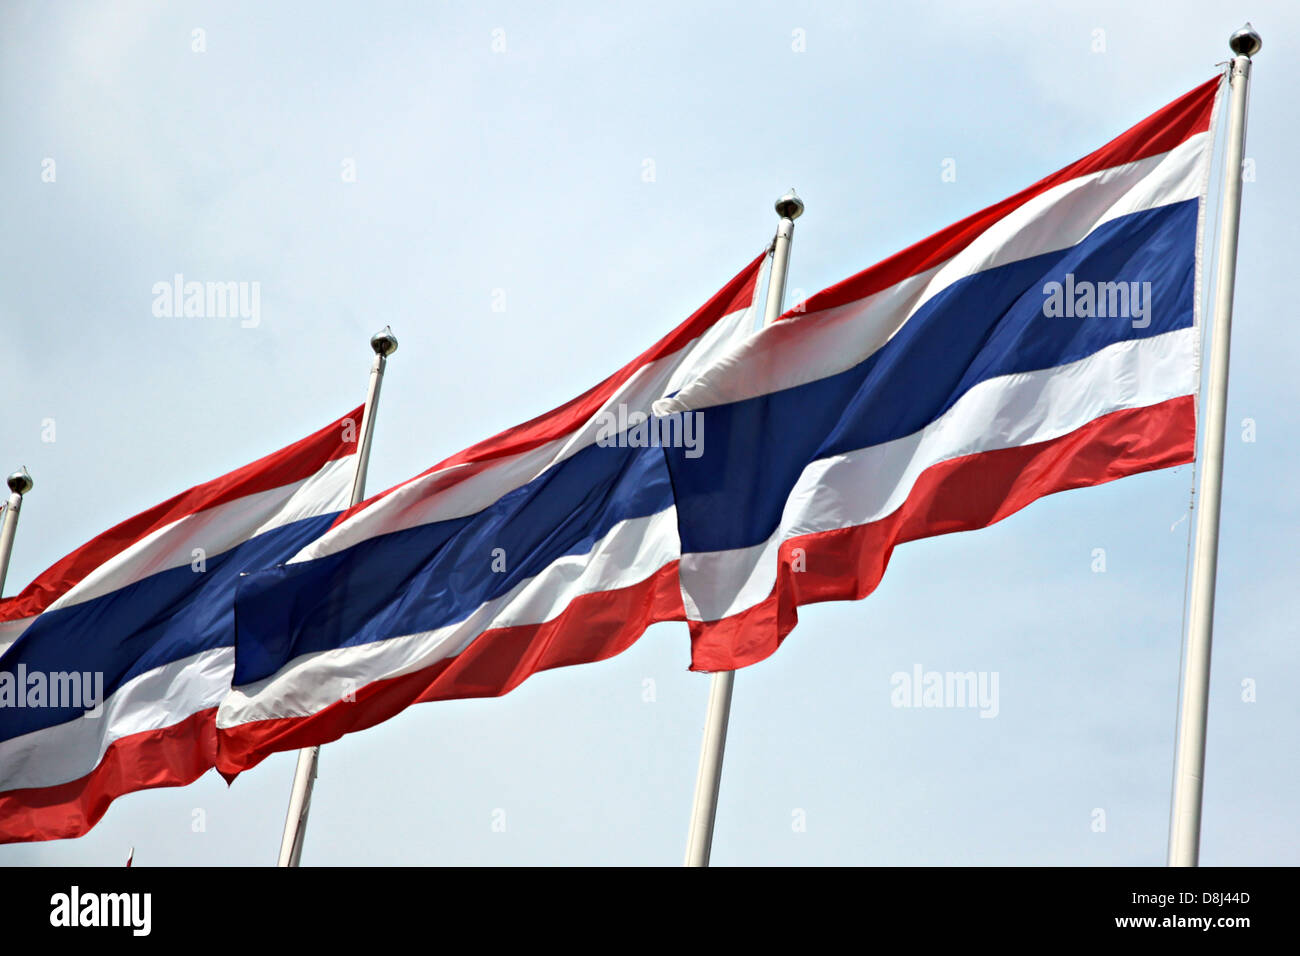 Die Flagge von Thailand getroffen durch starken Wind. Gehören die Flagge ist rot-weiß-blauen Farben. Stockfoto